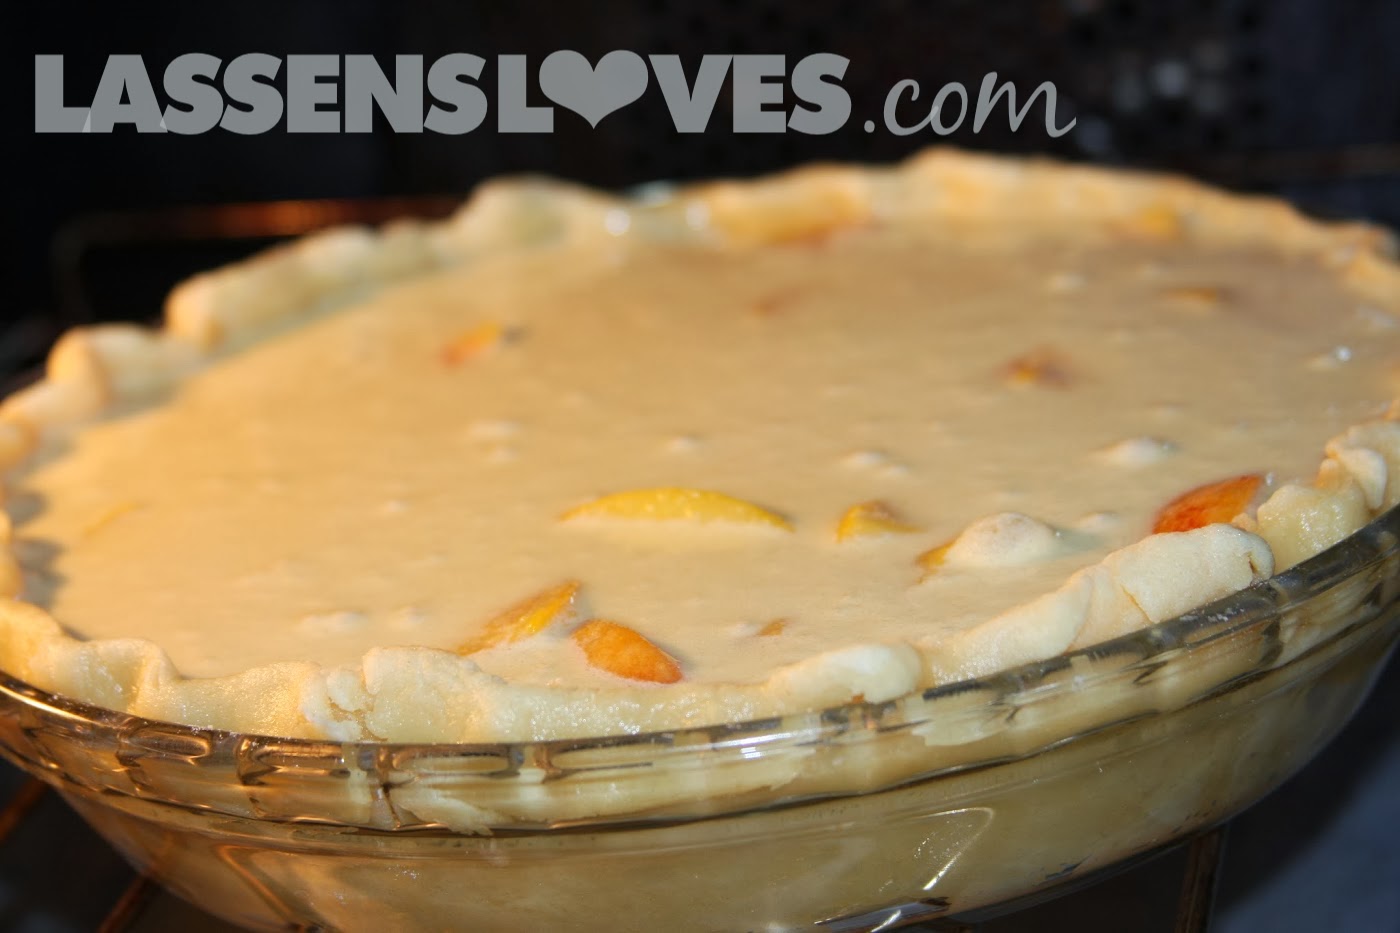 lassensloves.com, Lassen's, Lassens, Peach+Pie+Recipe, Pie+Crust+Recipe